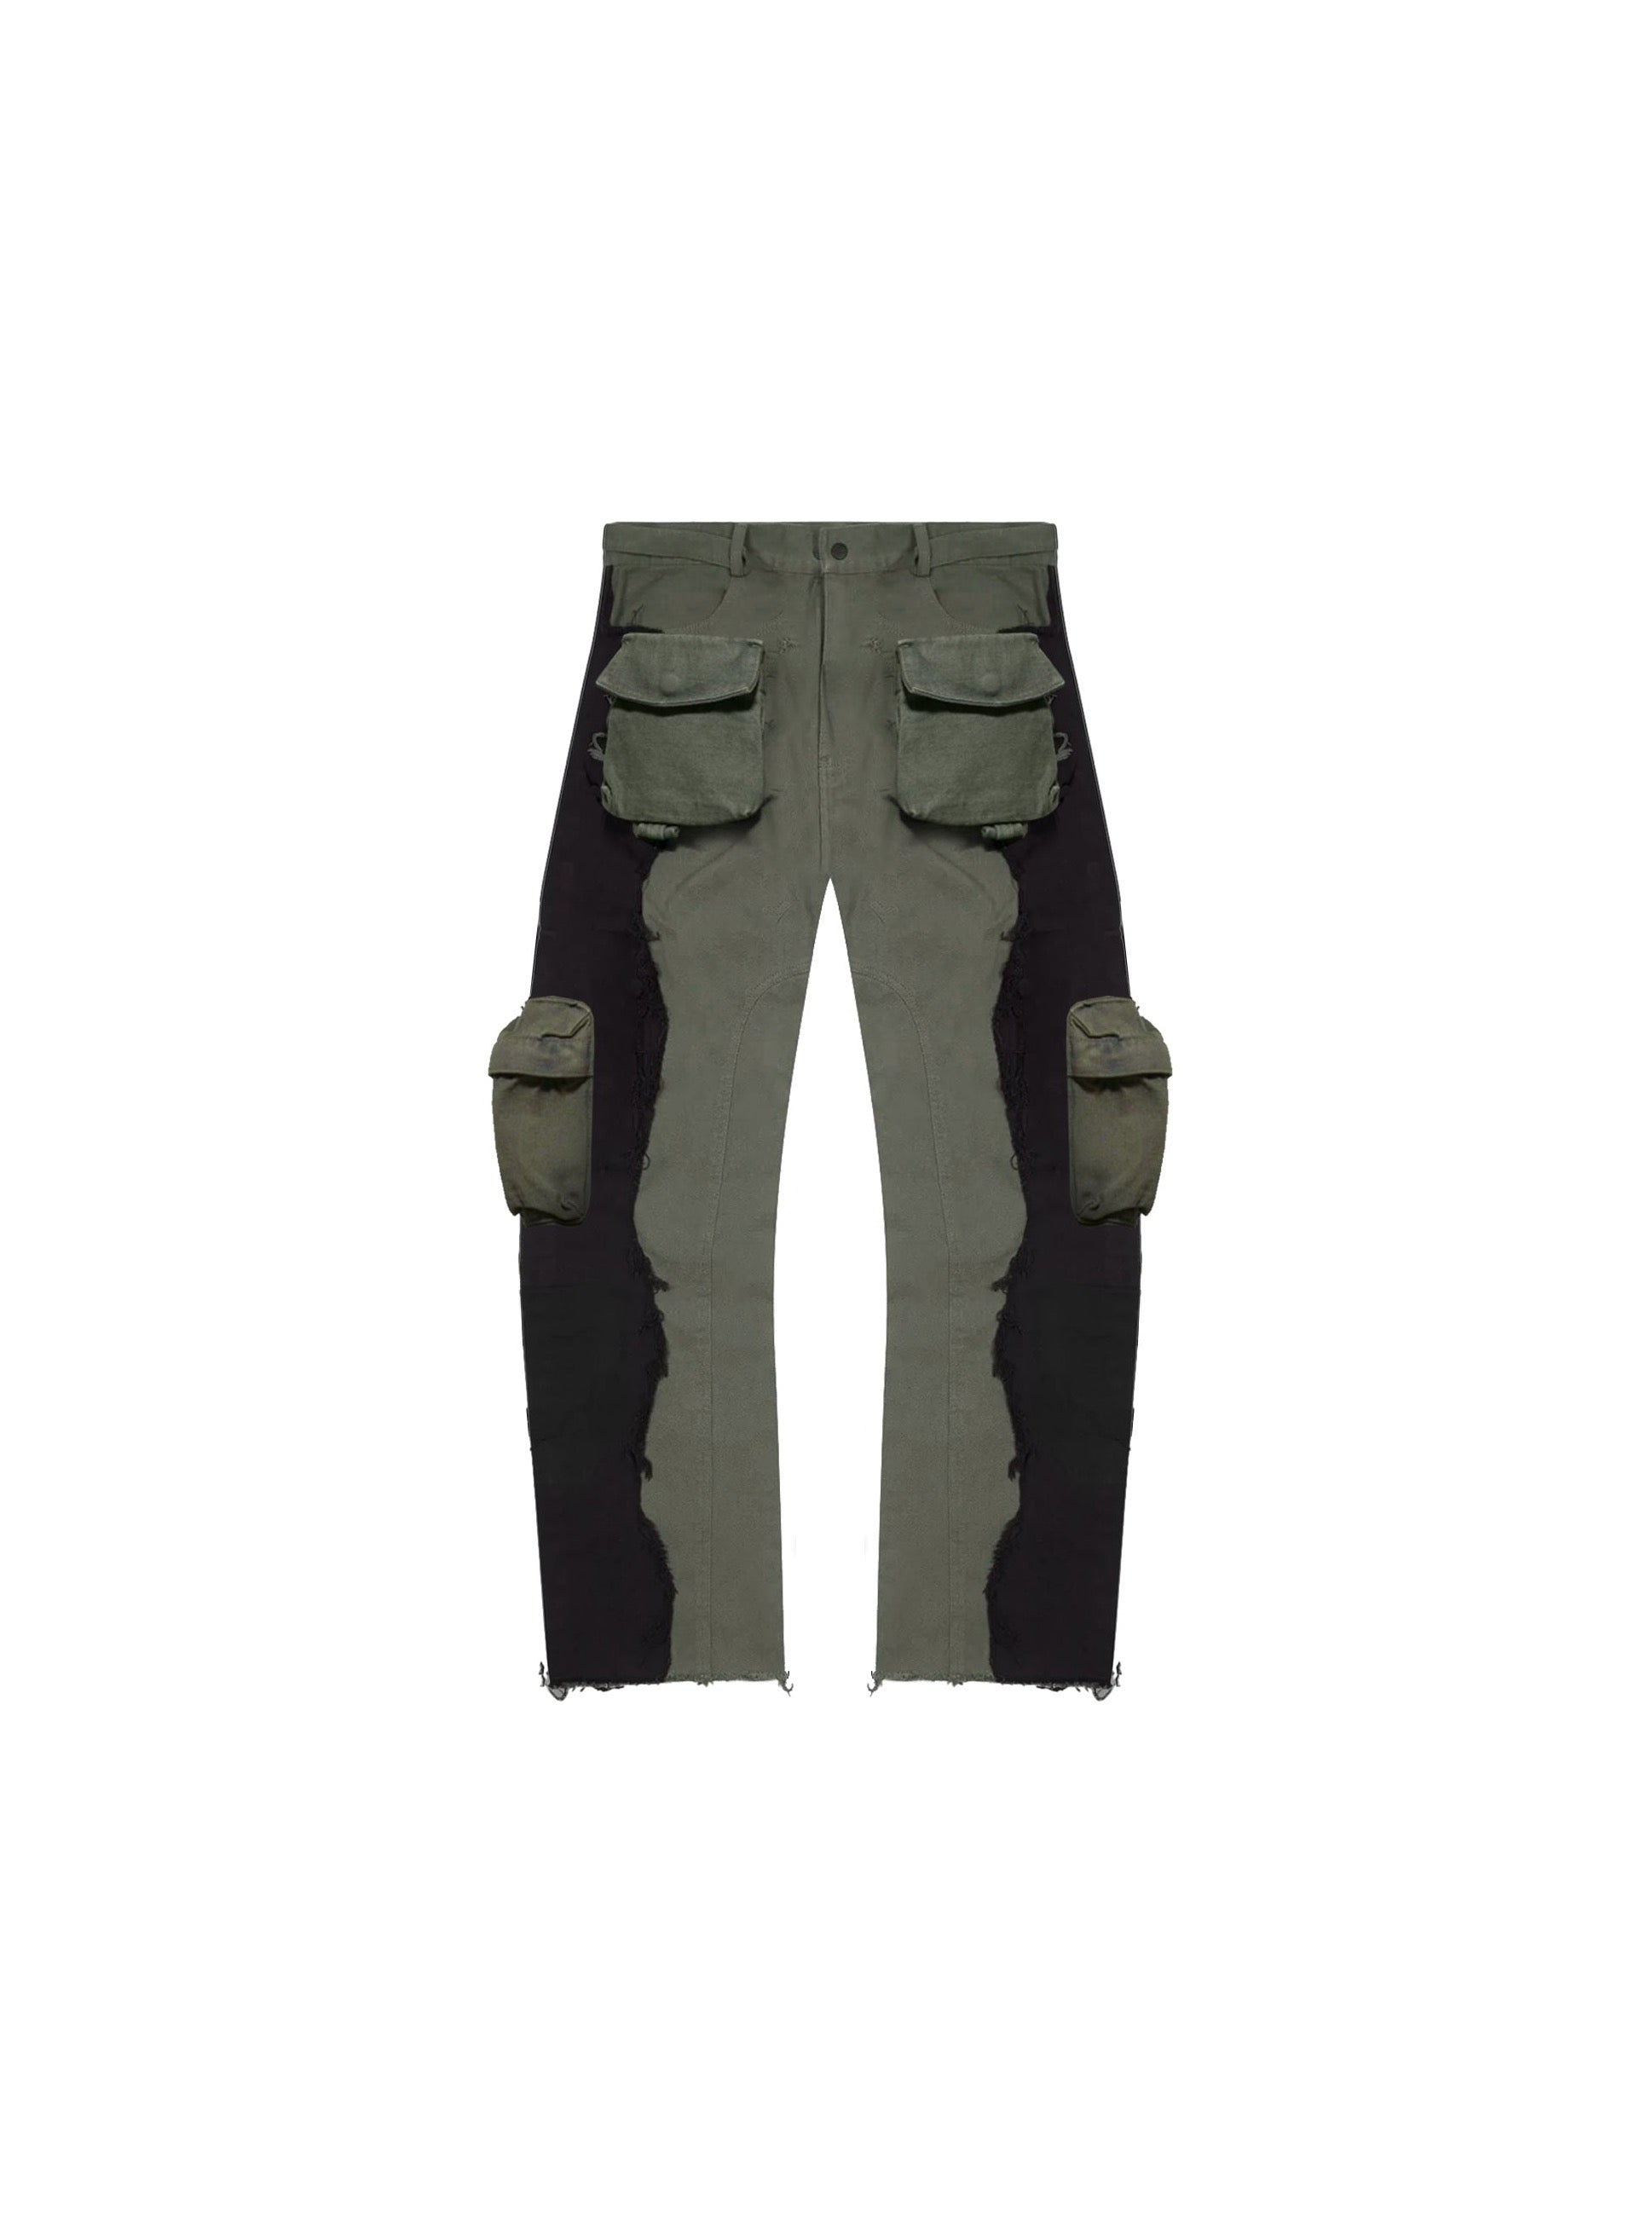 Suela et. Pantalones cargo Al Raw : Verde militar / Negro